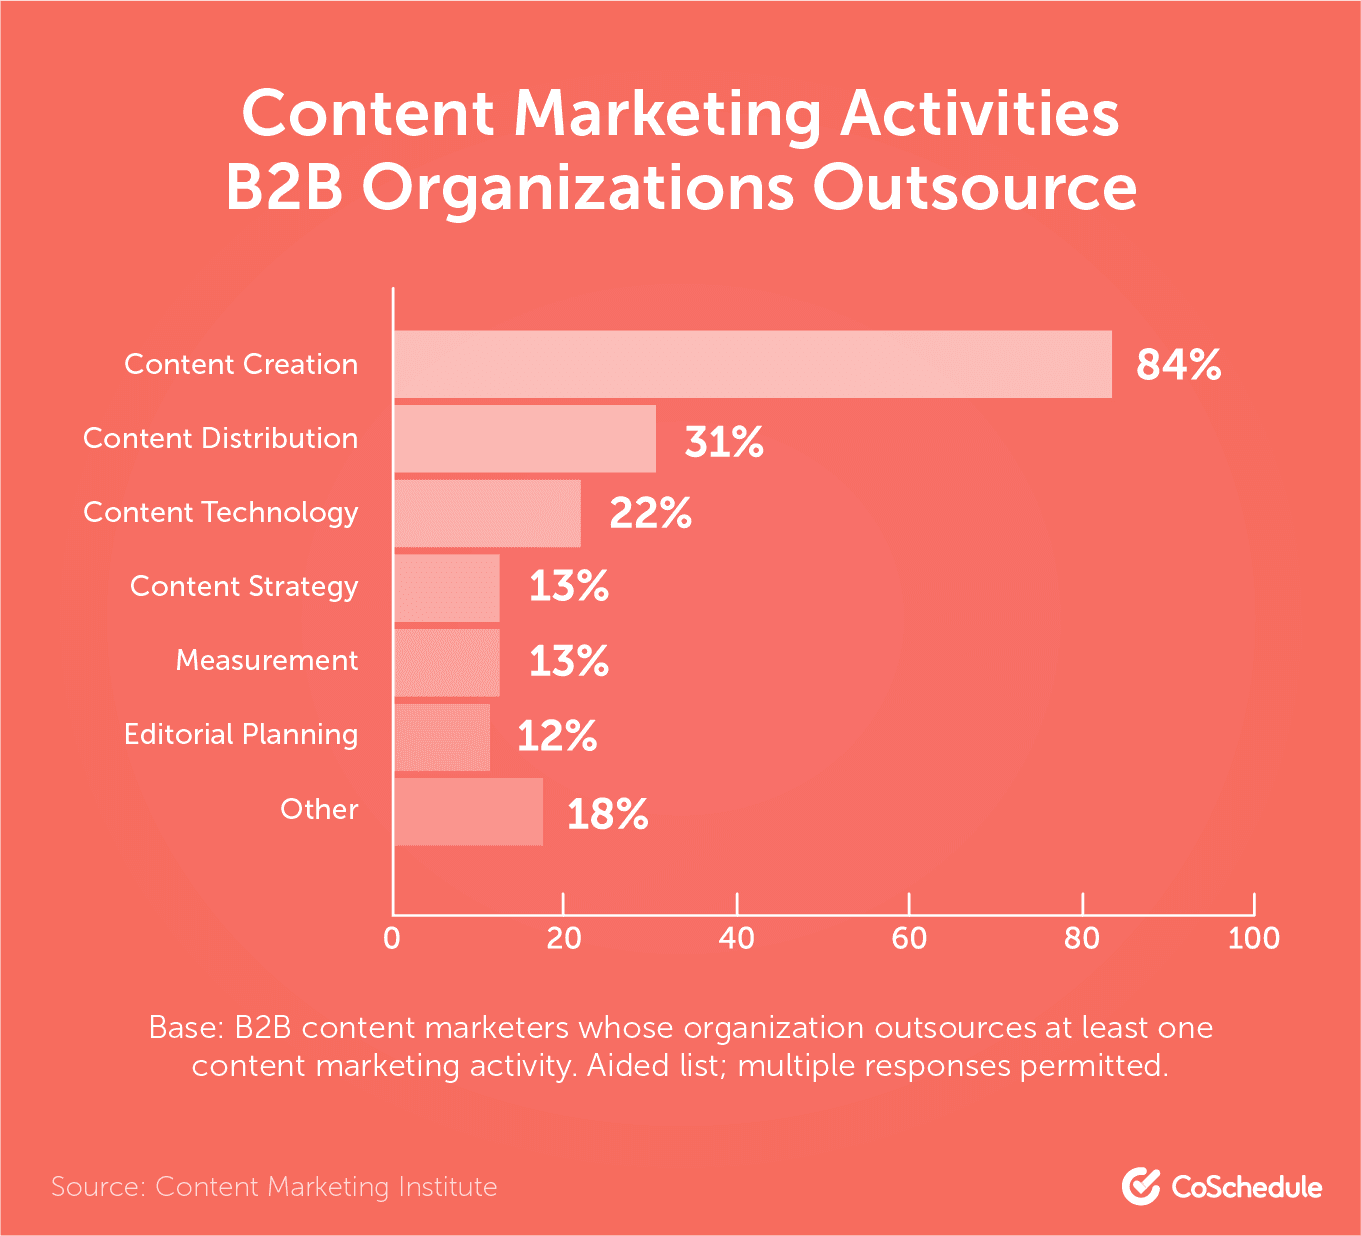 Content marketing activities